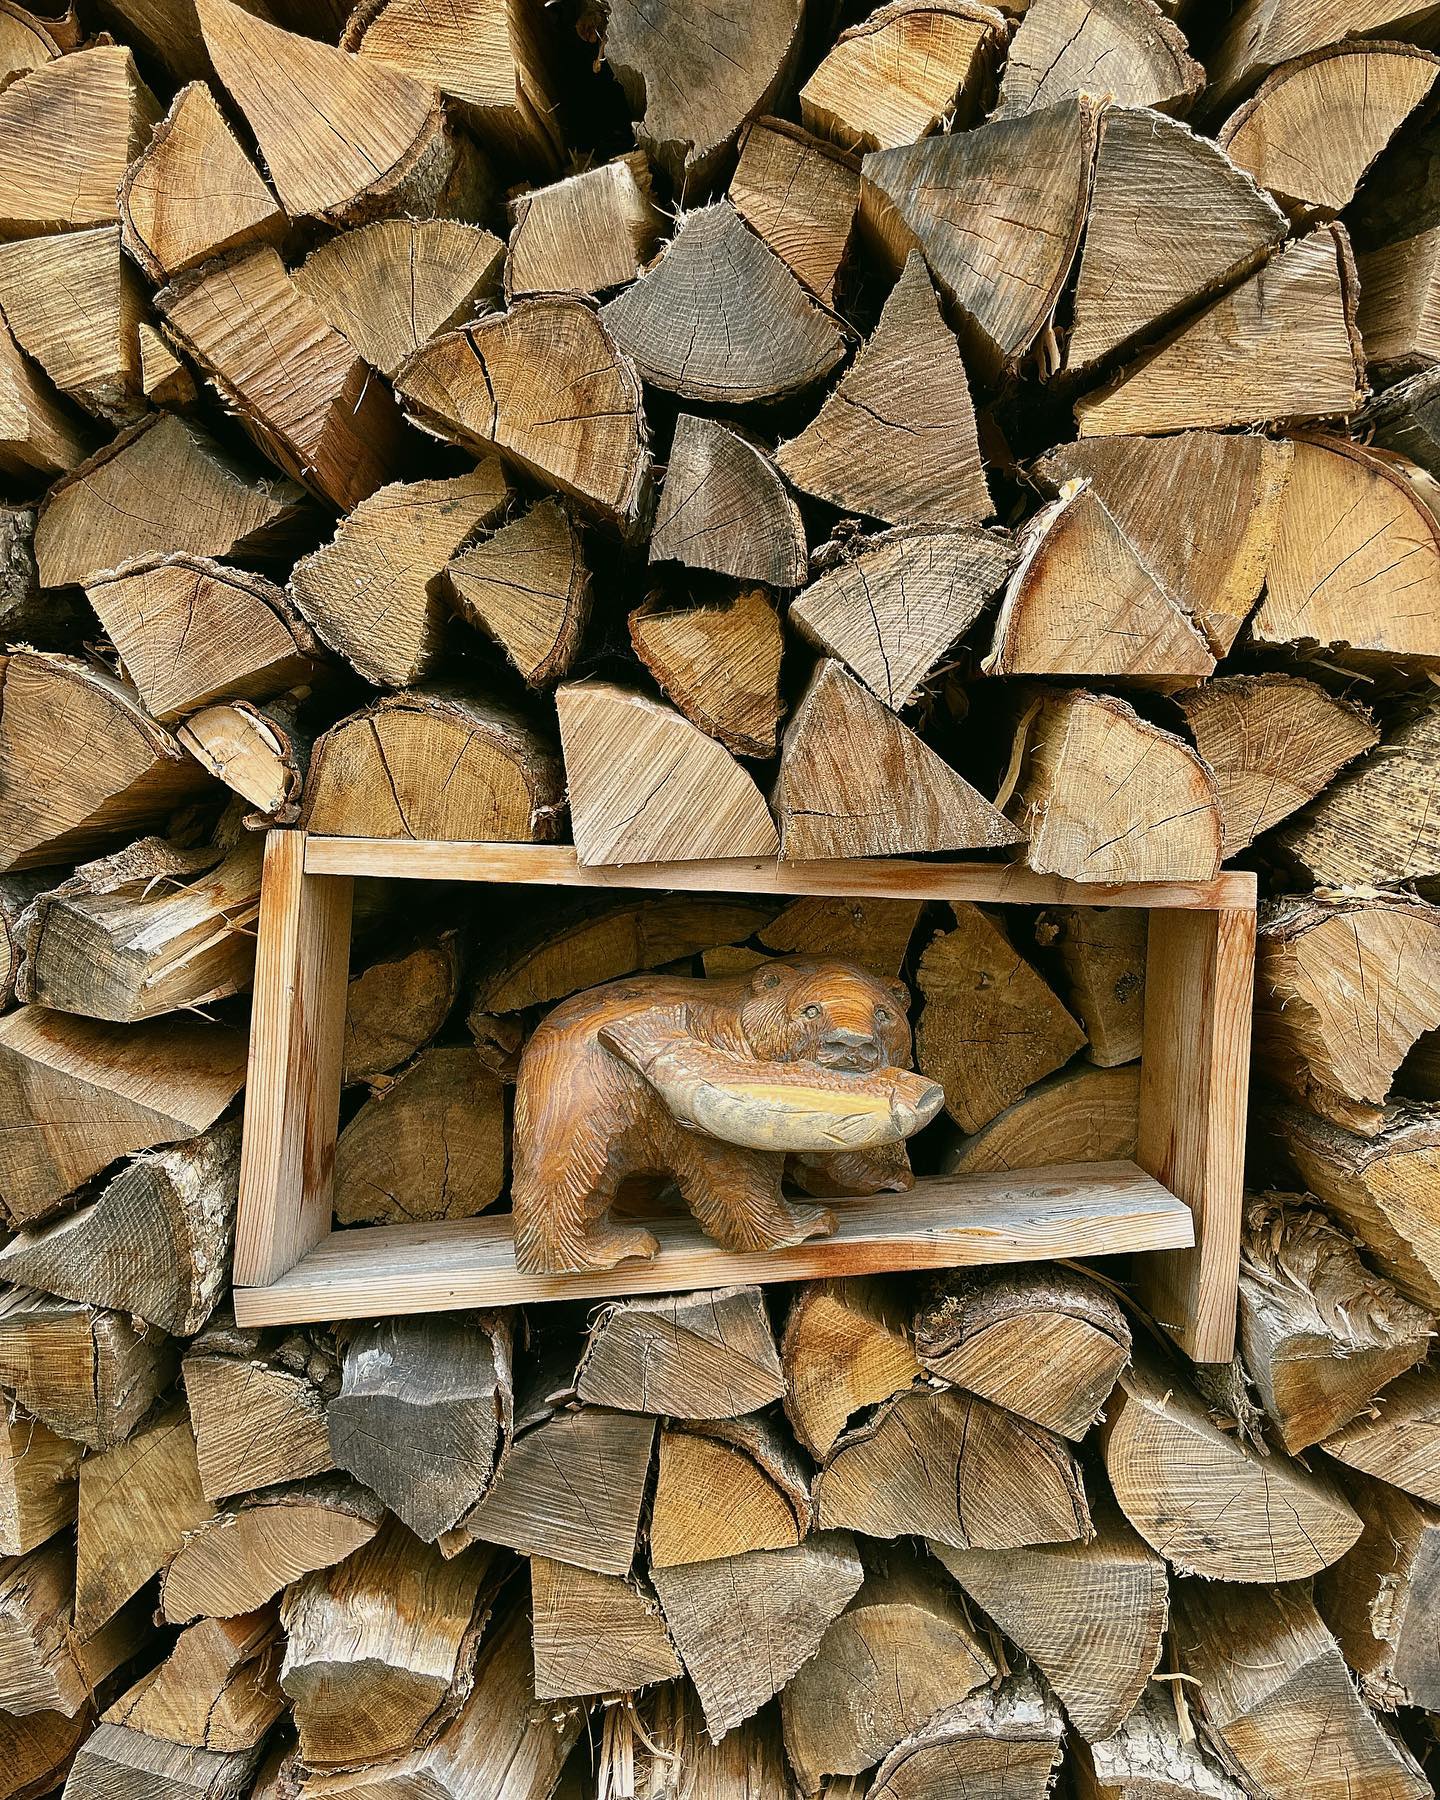 君、最近はやってるんだってね。

#木彫りの熊 #木彫り熊 #木彫りのクマ  #熊 #北海道土産 #遊木民 #woodproducts #hokkaido_lovers